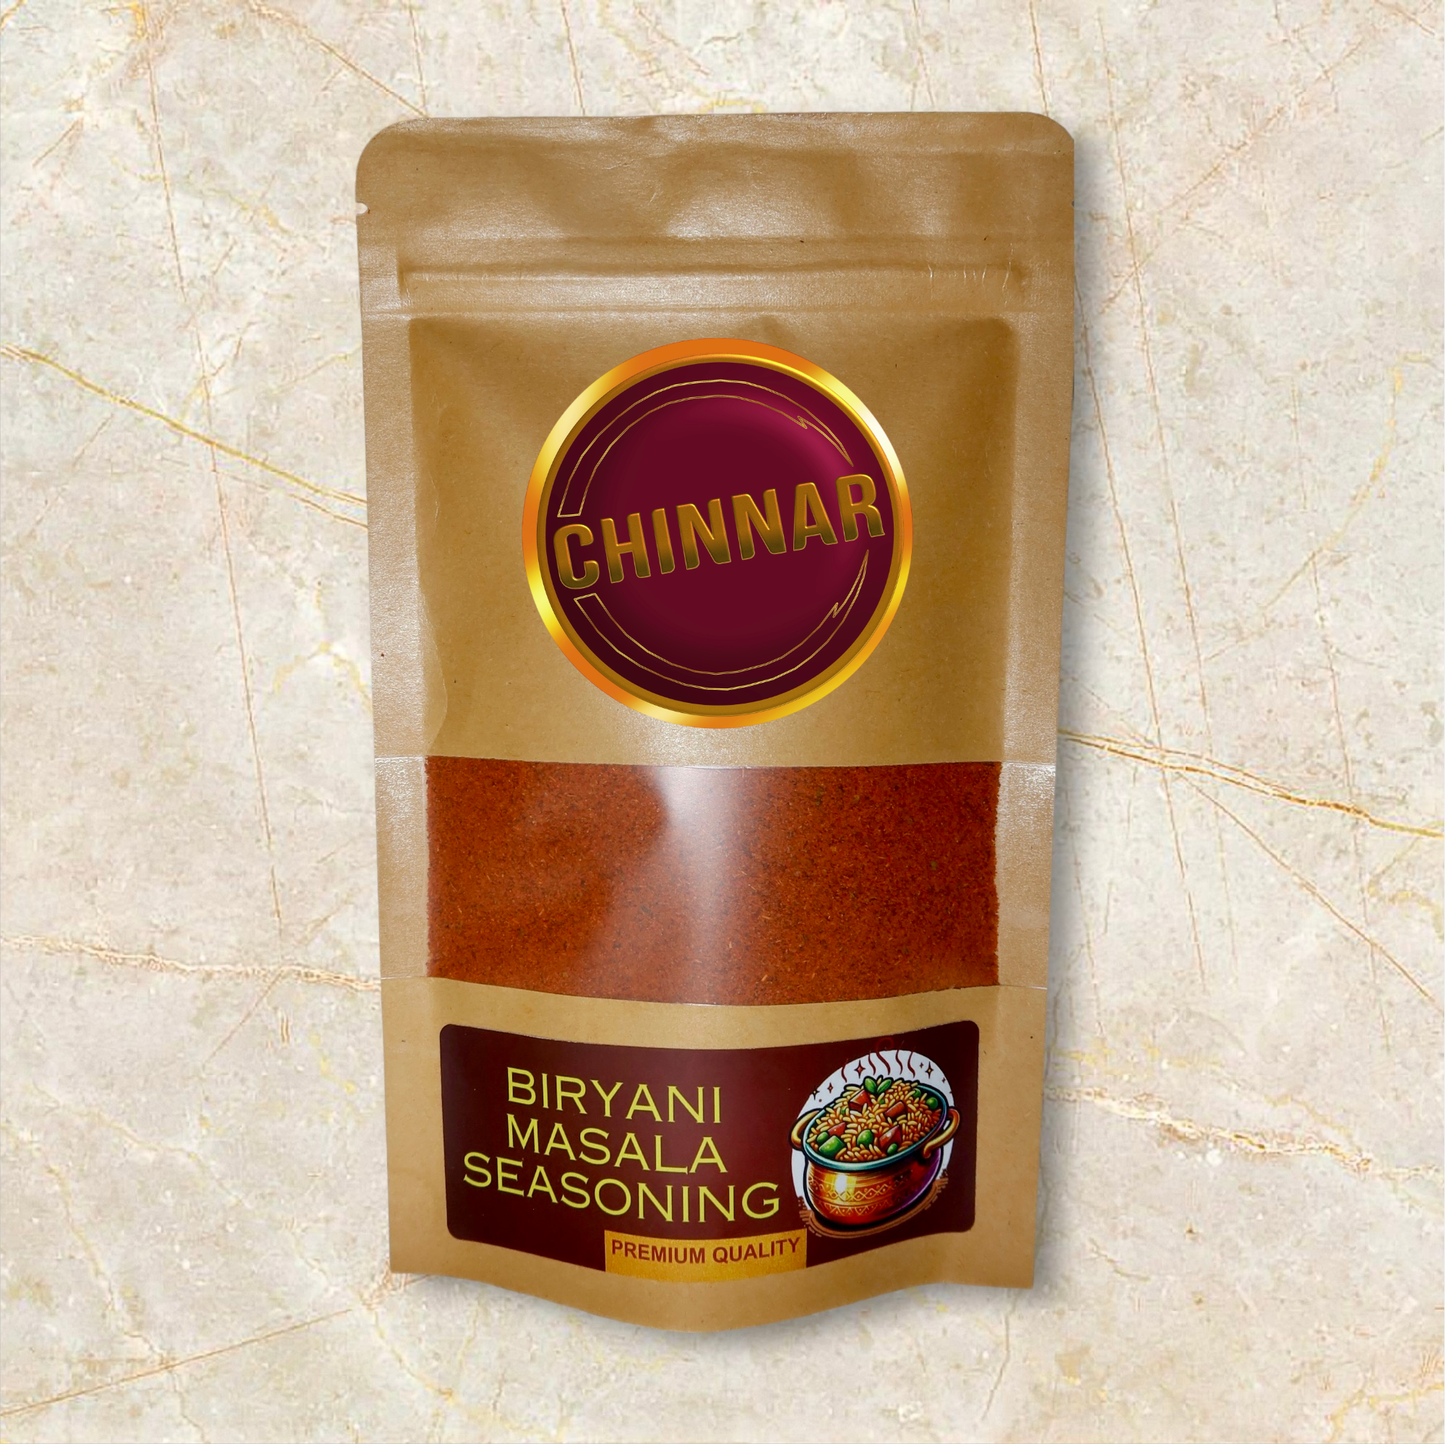 Chinnar - Biryani Masala Seasoning